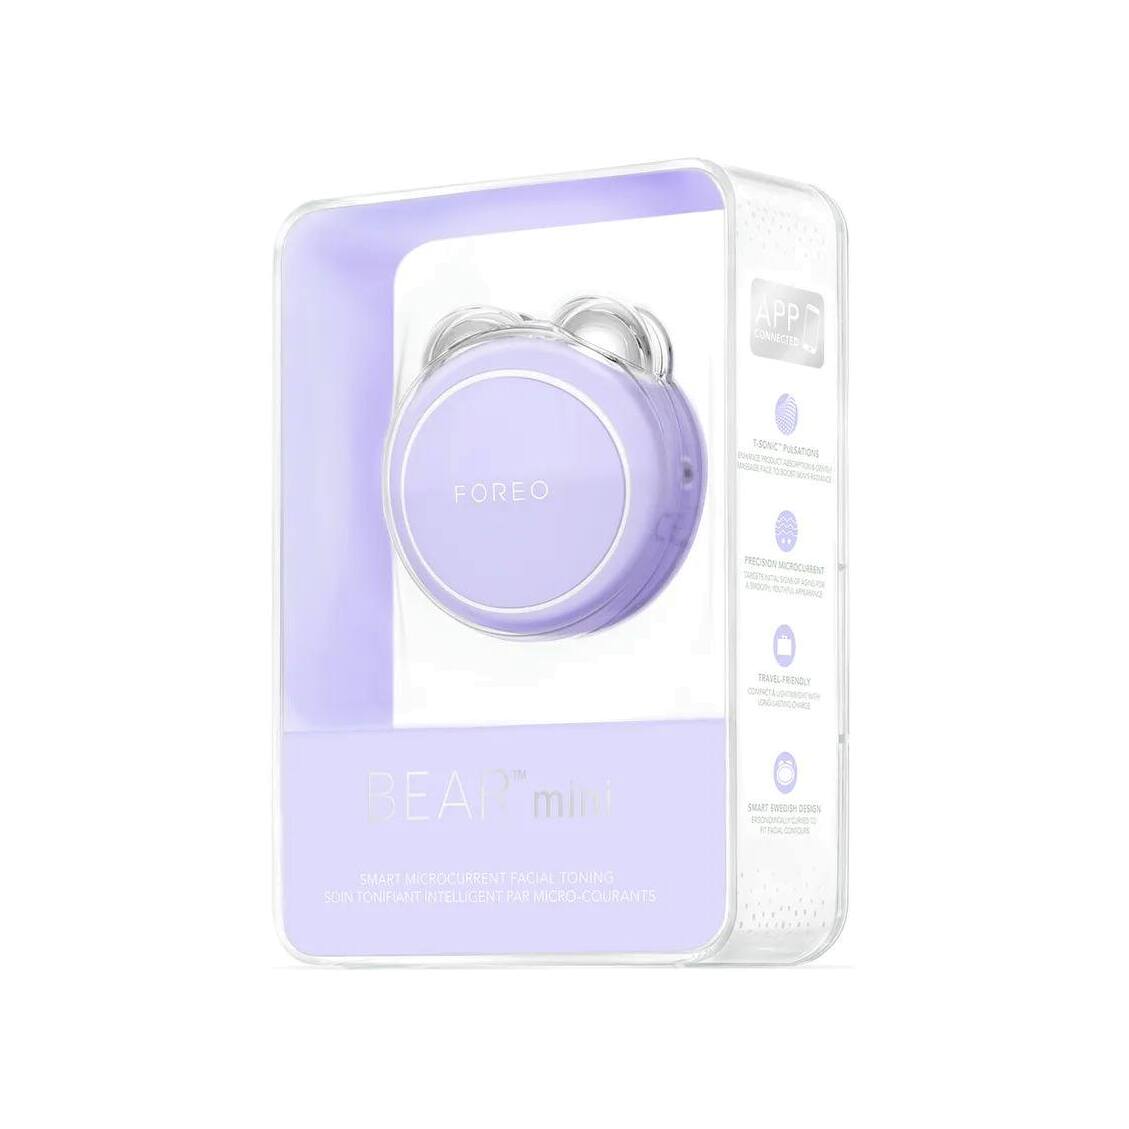 Микротоковое тонизирующее устройство для лица Bear Mini Lavender купить в VISAGEHALL